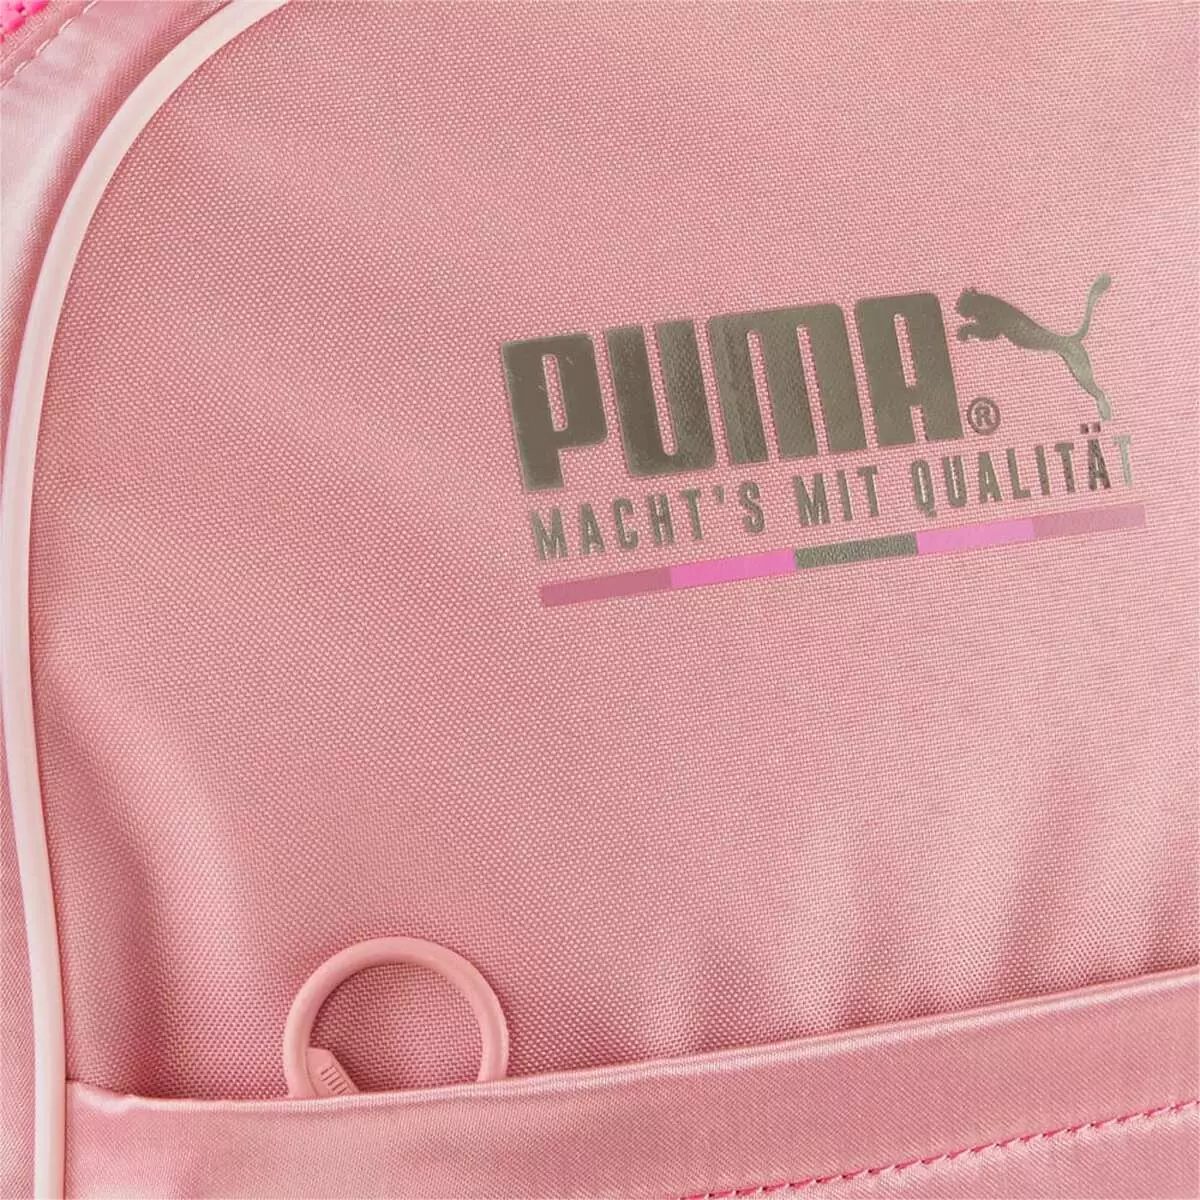 Puma Backpacks: Perempuan dan pria, hitam, merah muda, olahraga kulit, bulat dan model asli lainnya. Bagaimana cara mencucinya dengan benar? 15396_25